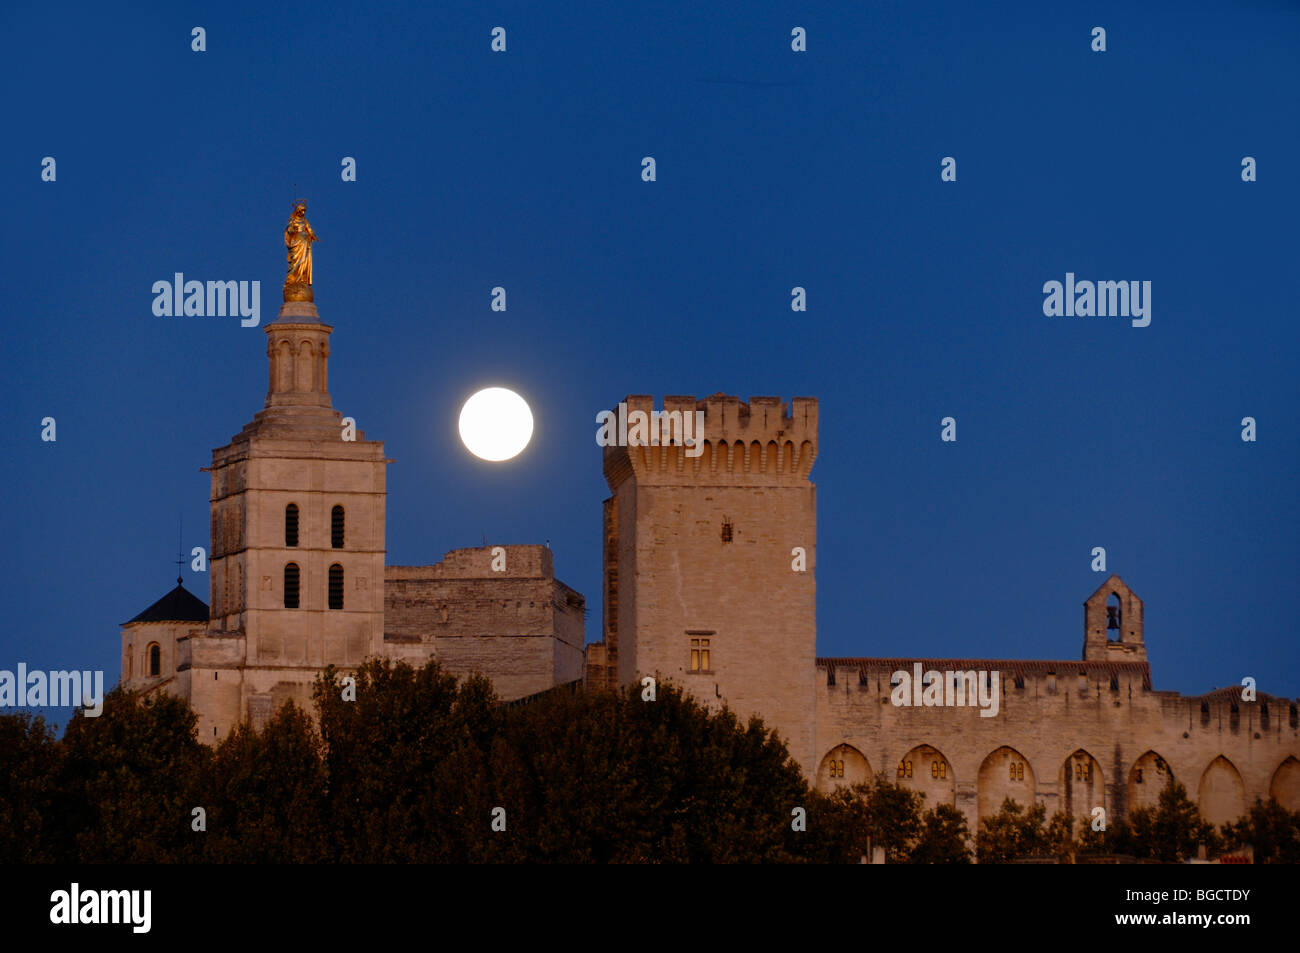 La pleine lune sur le Palais des Papes, ou Palais des Papes, & Cathédrale Notre-Dame-des-Doms, Avignon, Provence, France Banque D'Images